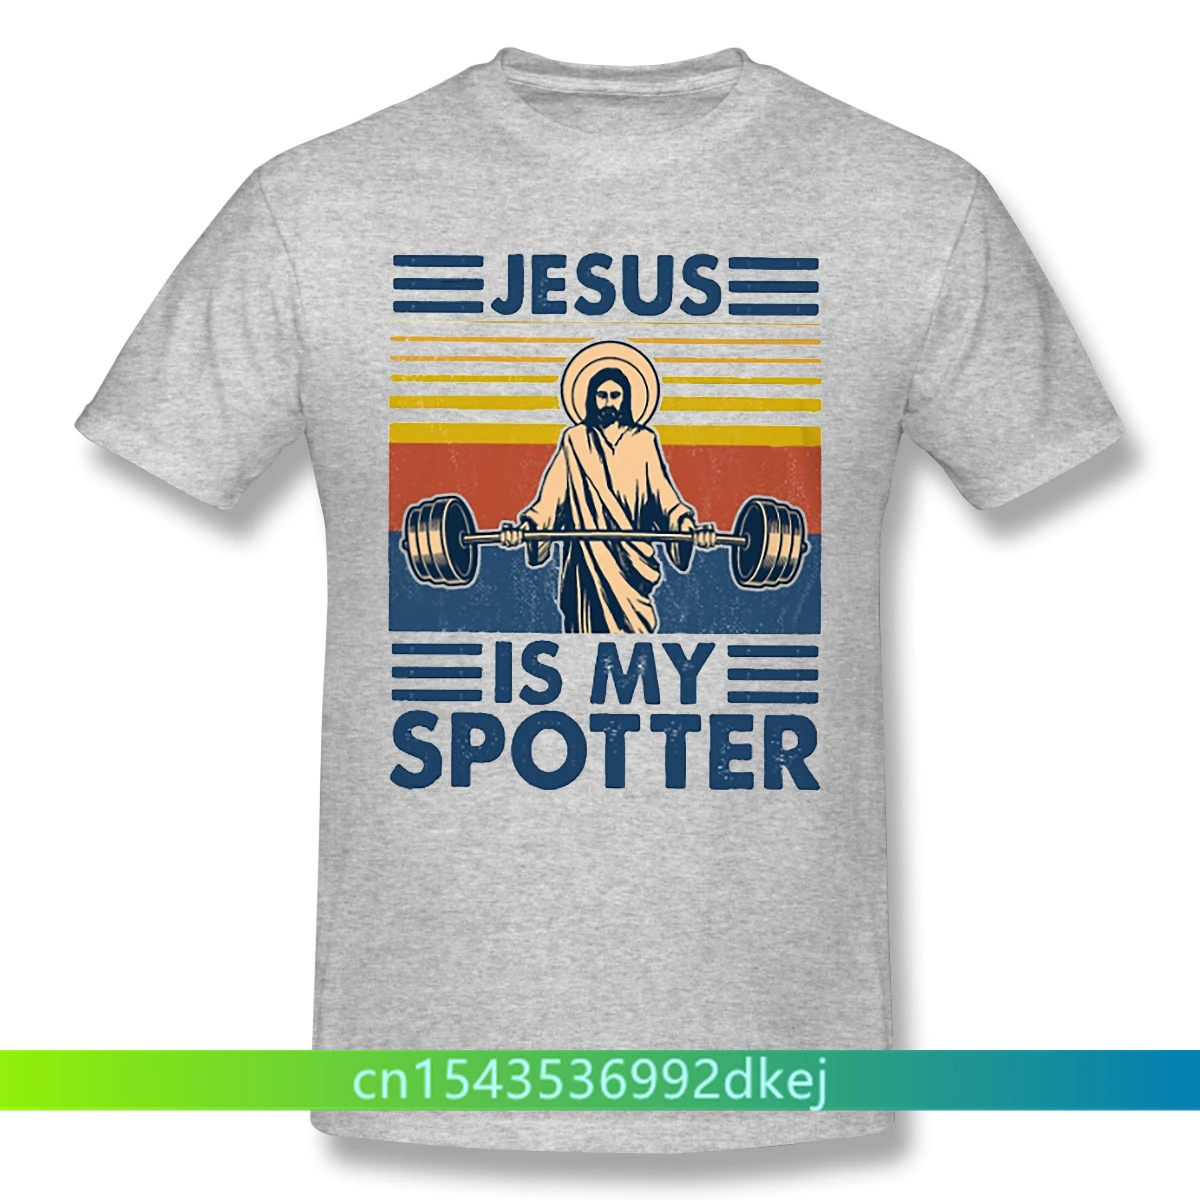 

Мужская Тренировочная черная футболка для бодибилдинга, кроссфита, фитнеса, с изображением Иисуса и моих зрителей, футболки из чистого хлопка, рубашка в стиле Харадзюку